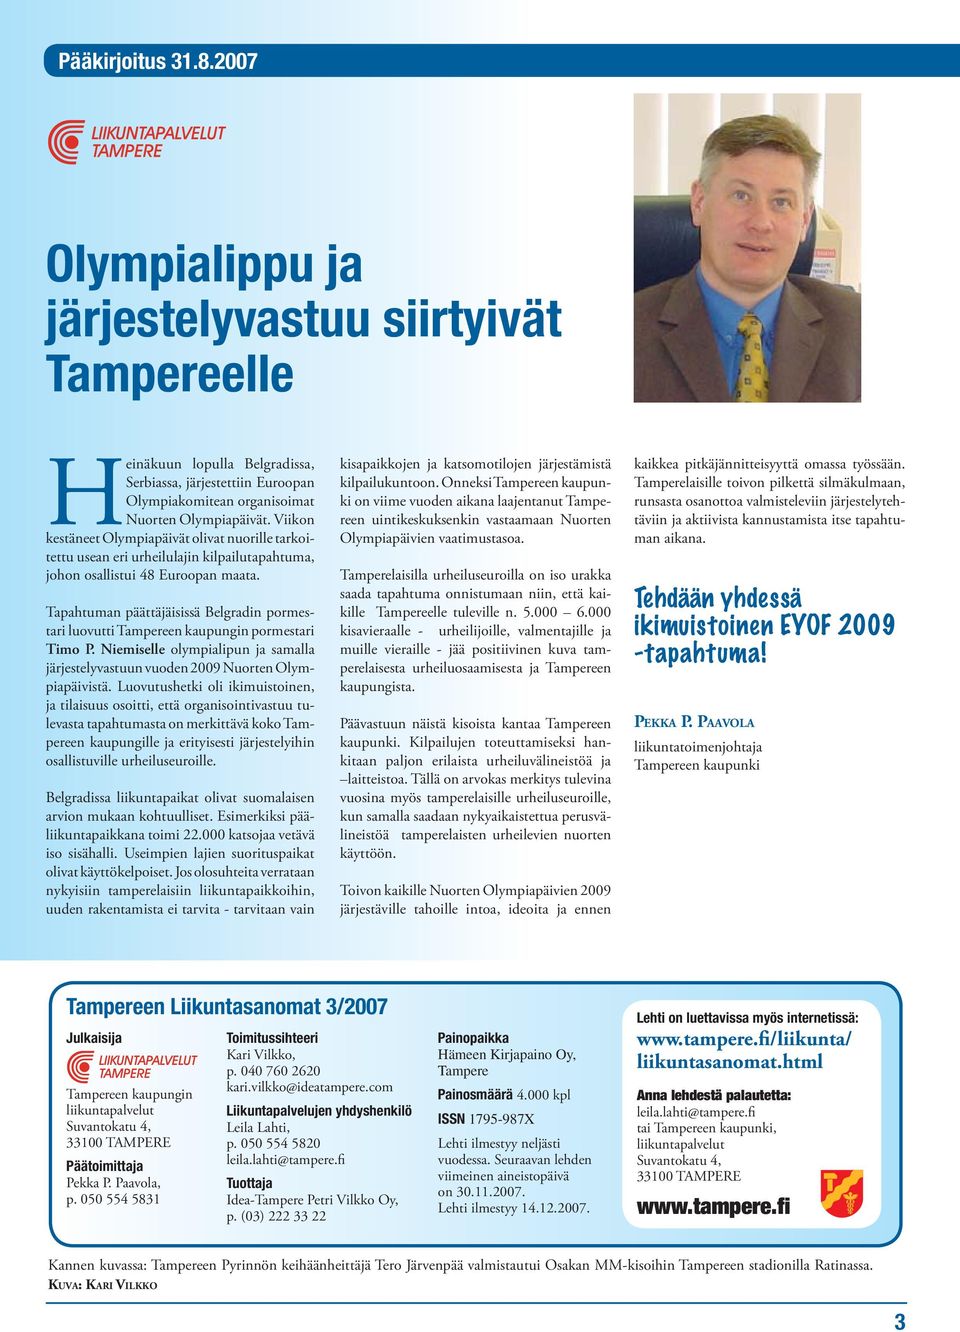 Tapahtuman päättäjäisissä Belgradin pormestari luovutti Tampereen kaupungin pormestari Timo P. Niemiselle olympialipun ja samalla järjestelyvastuun vuoden 2009 Nuorten Olympiapäivistä.